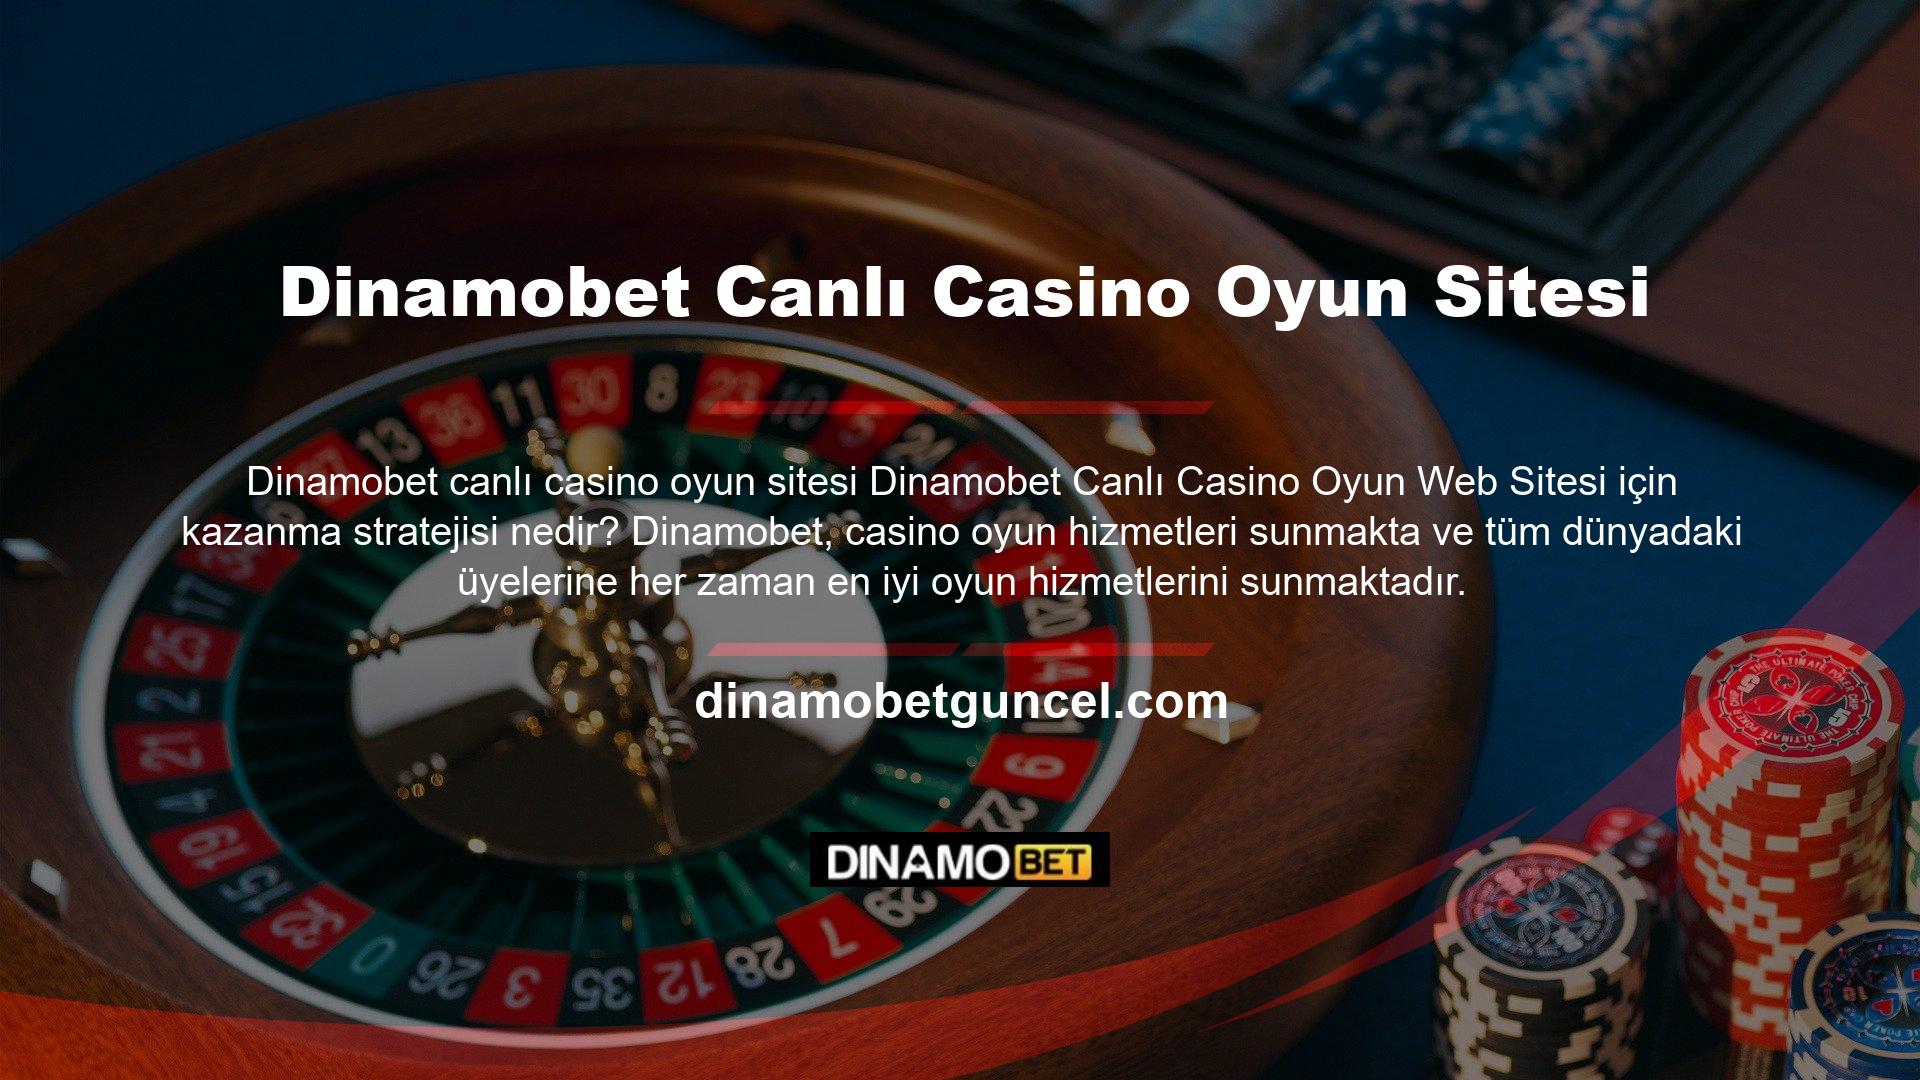 Tüm oyun hizmetleri Dinamobet Casino Games tarafından çevrimiçi kullanıcılar aracılığıyla sağlanmakta olup, Dinamobet üyelerinin casino oyunlarından kolaylıkla keyif almasına olanak sağlanmaktadır